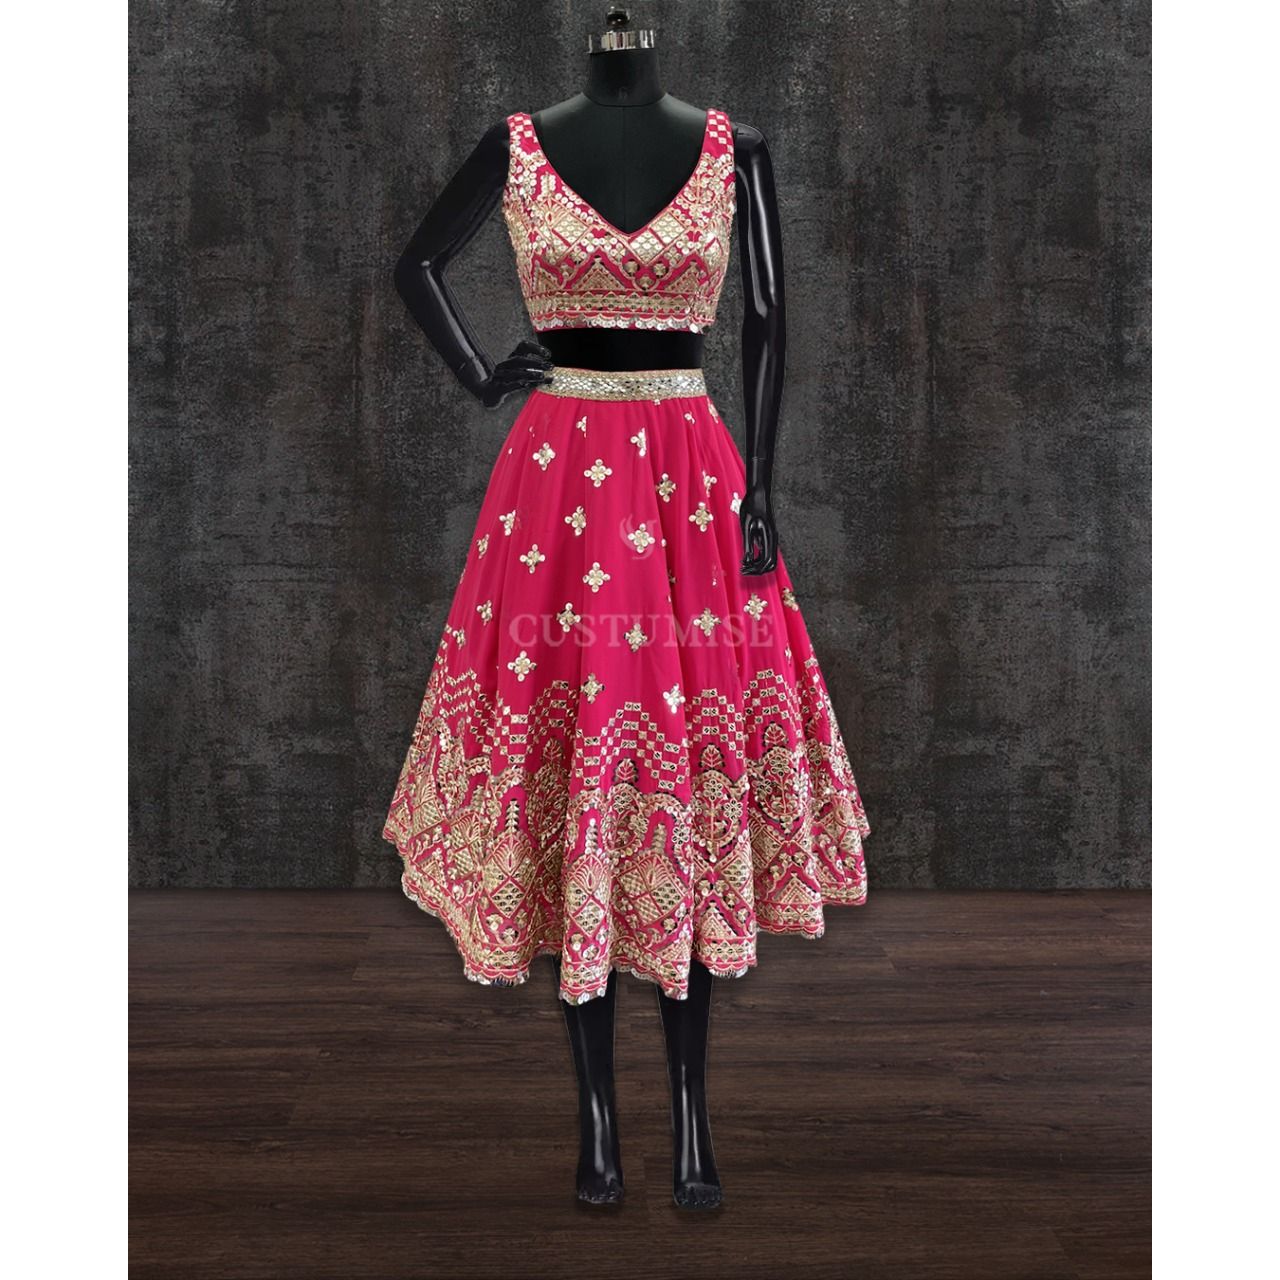 Hot pink embroidered Short Skirt Set - Indian Designer Bridal Wedding Outfit